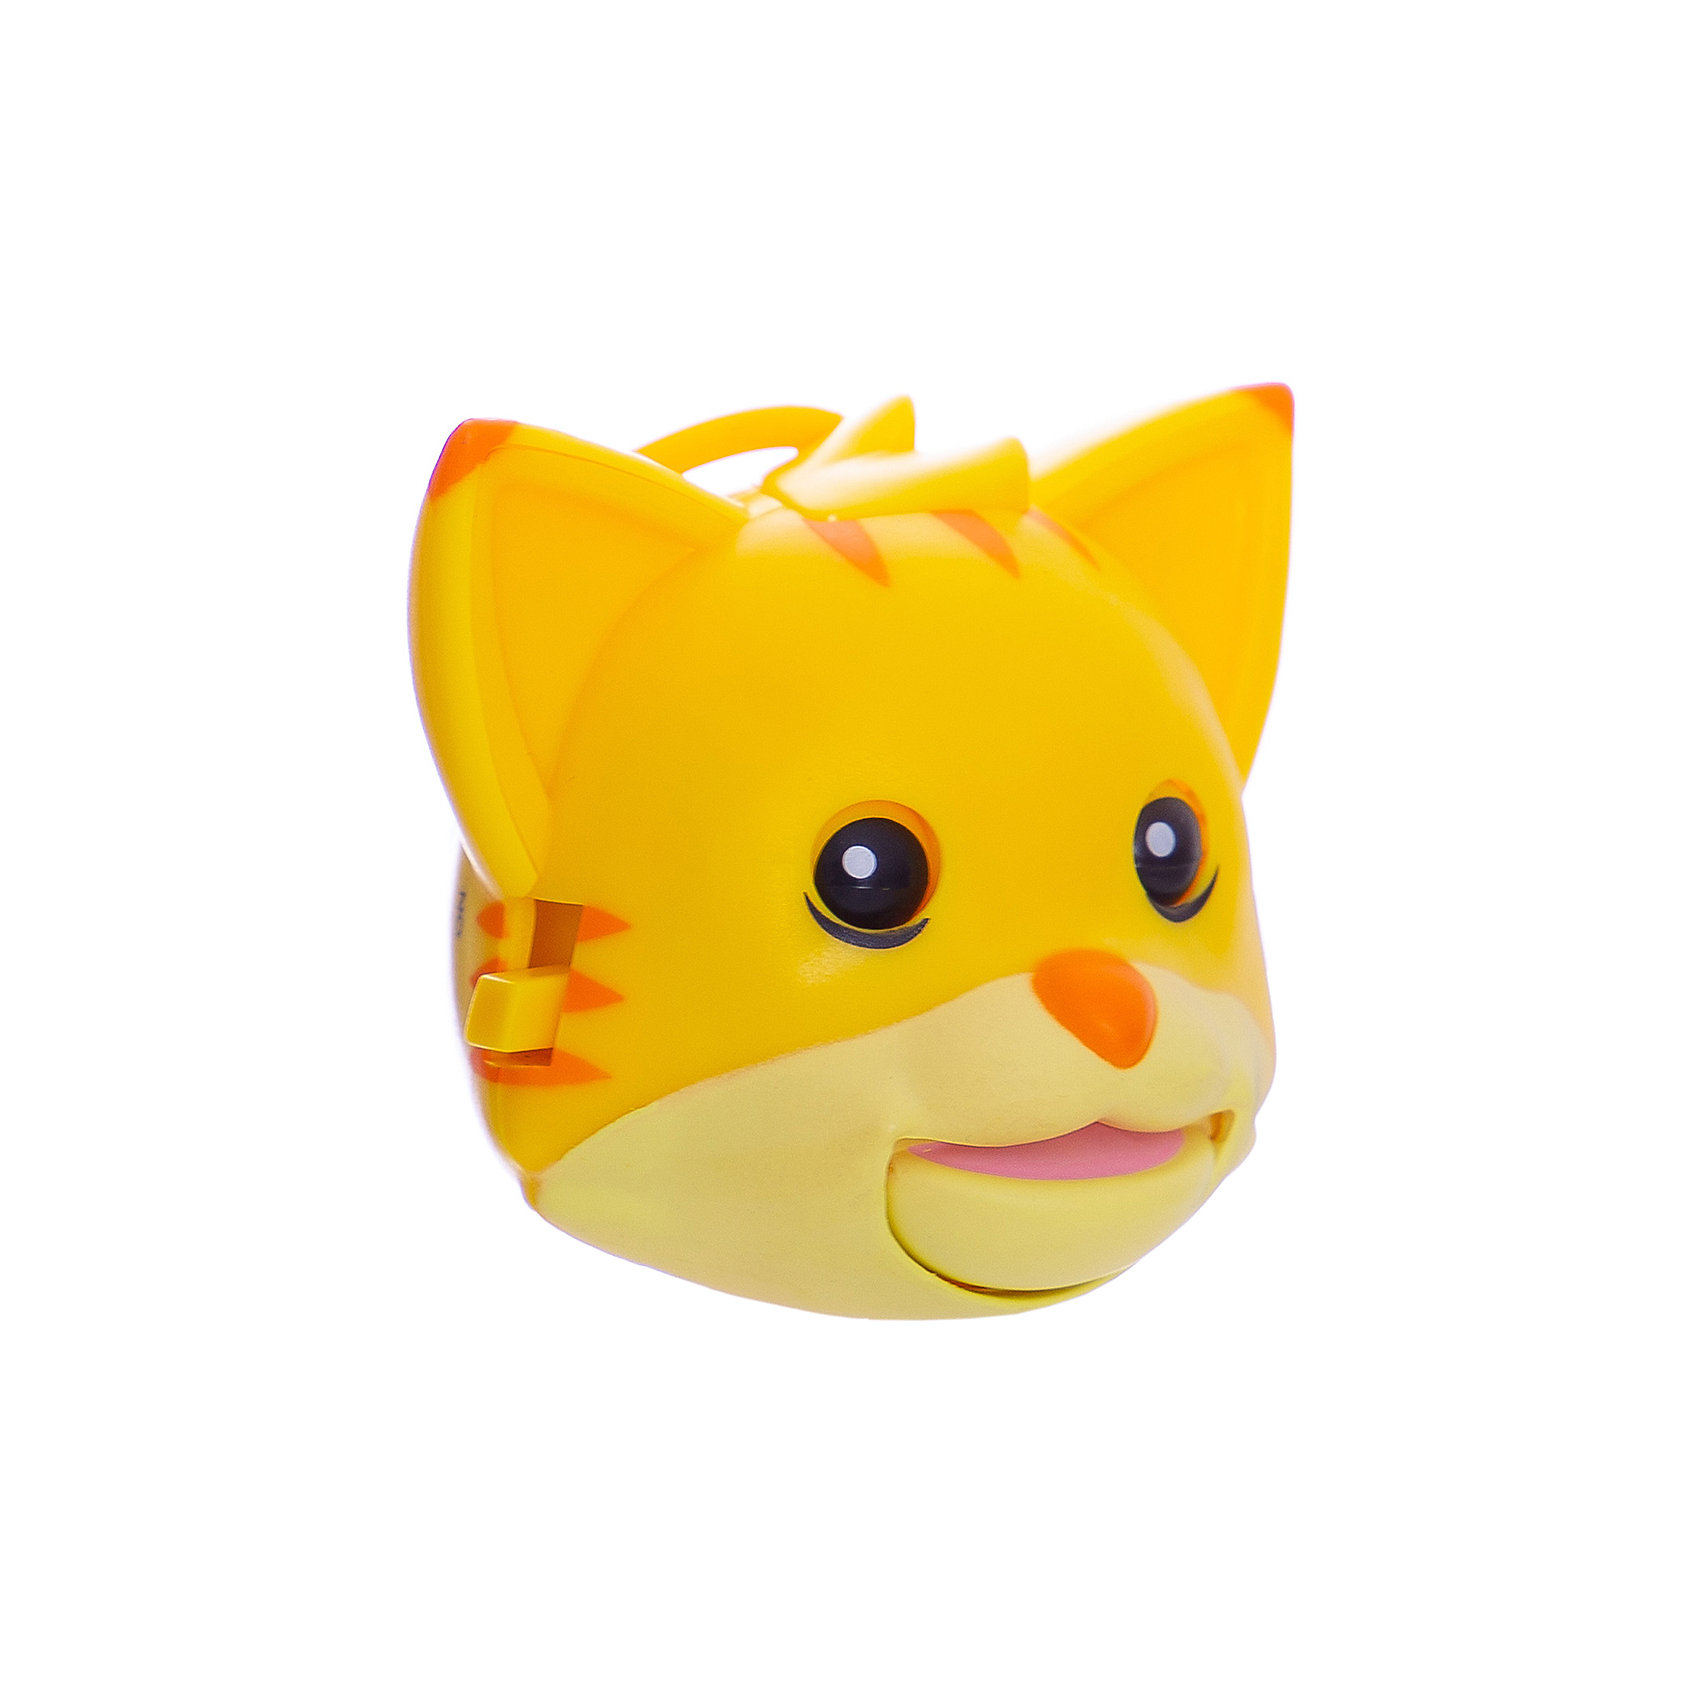 фото Интерактивная игрушка TigerHead Toys Limited "Mojimoto" Кошка